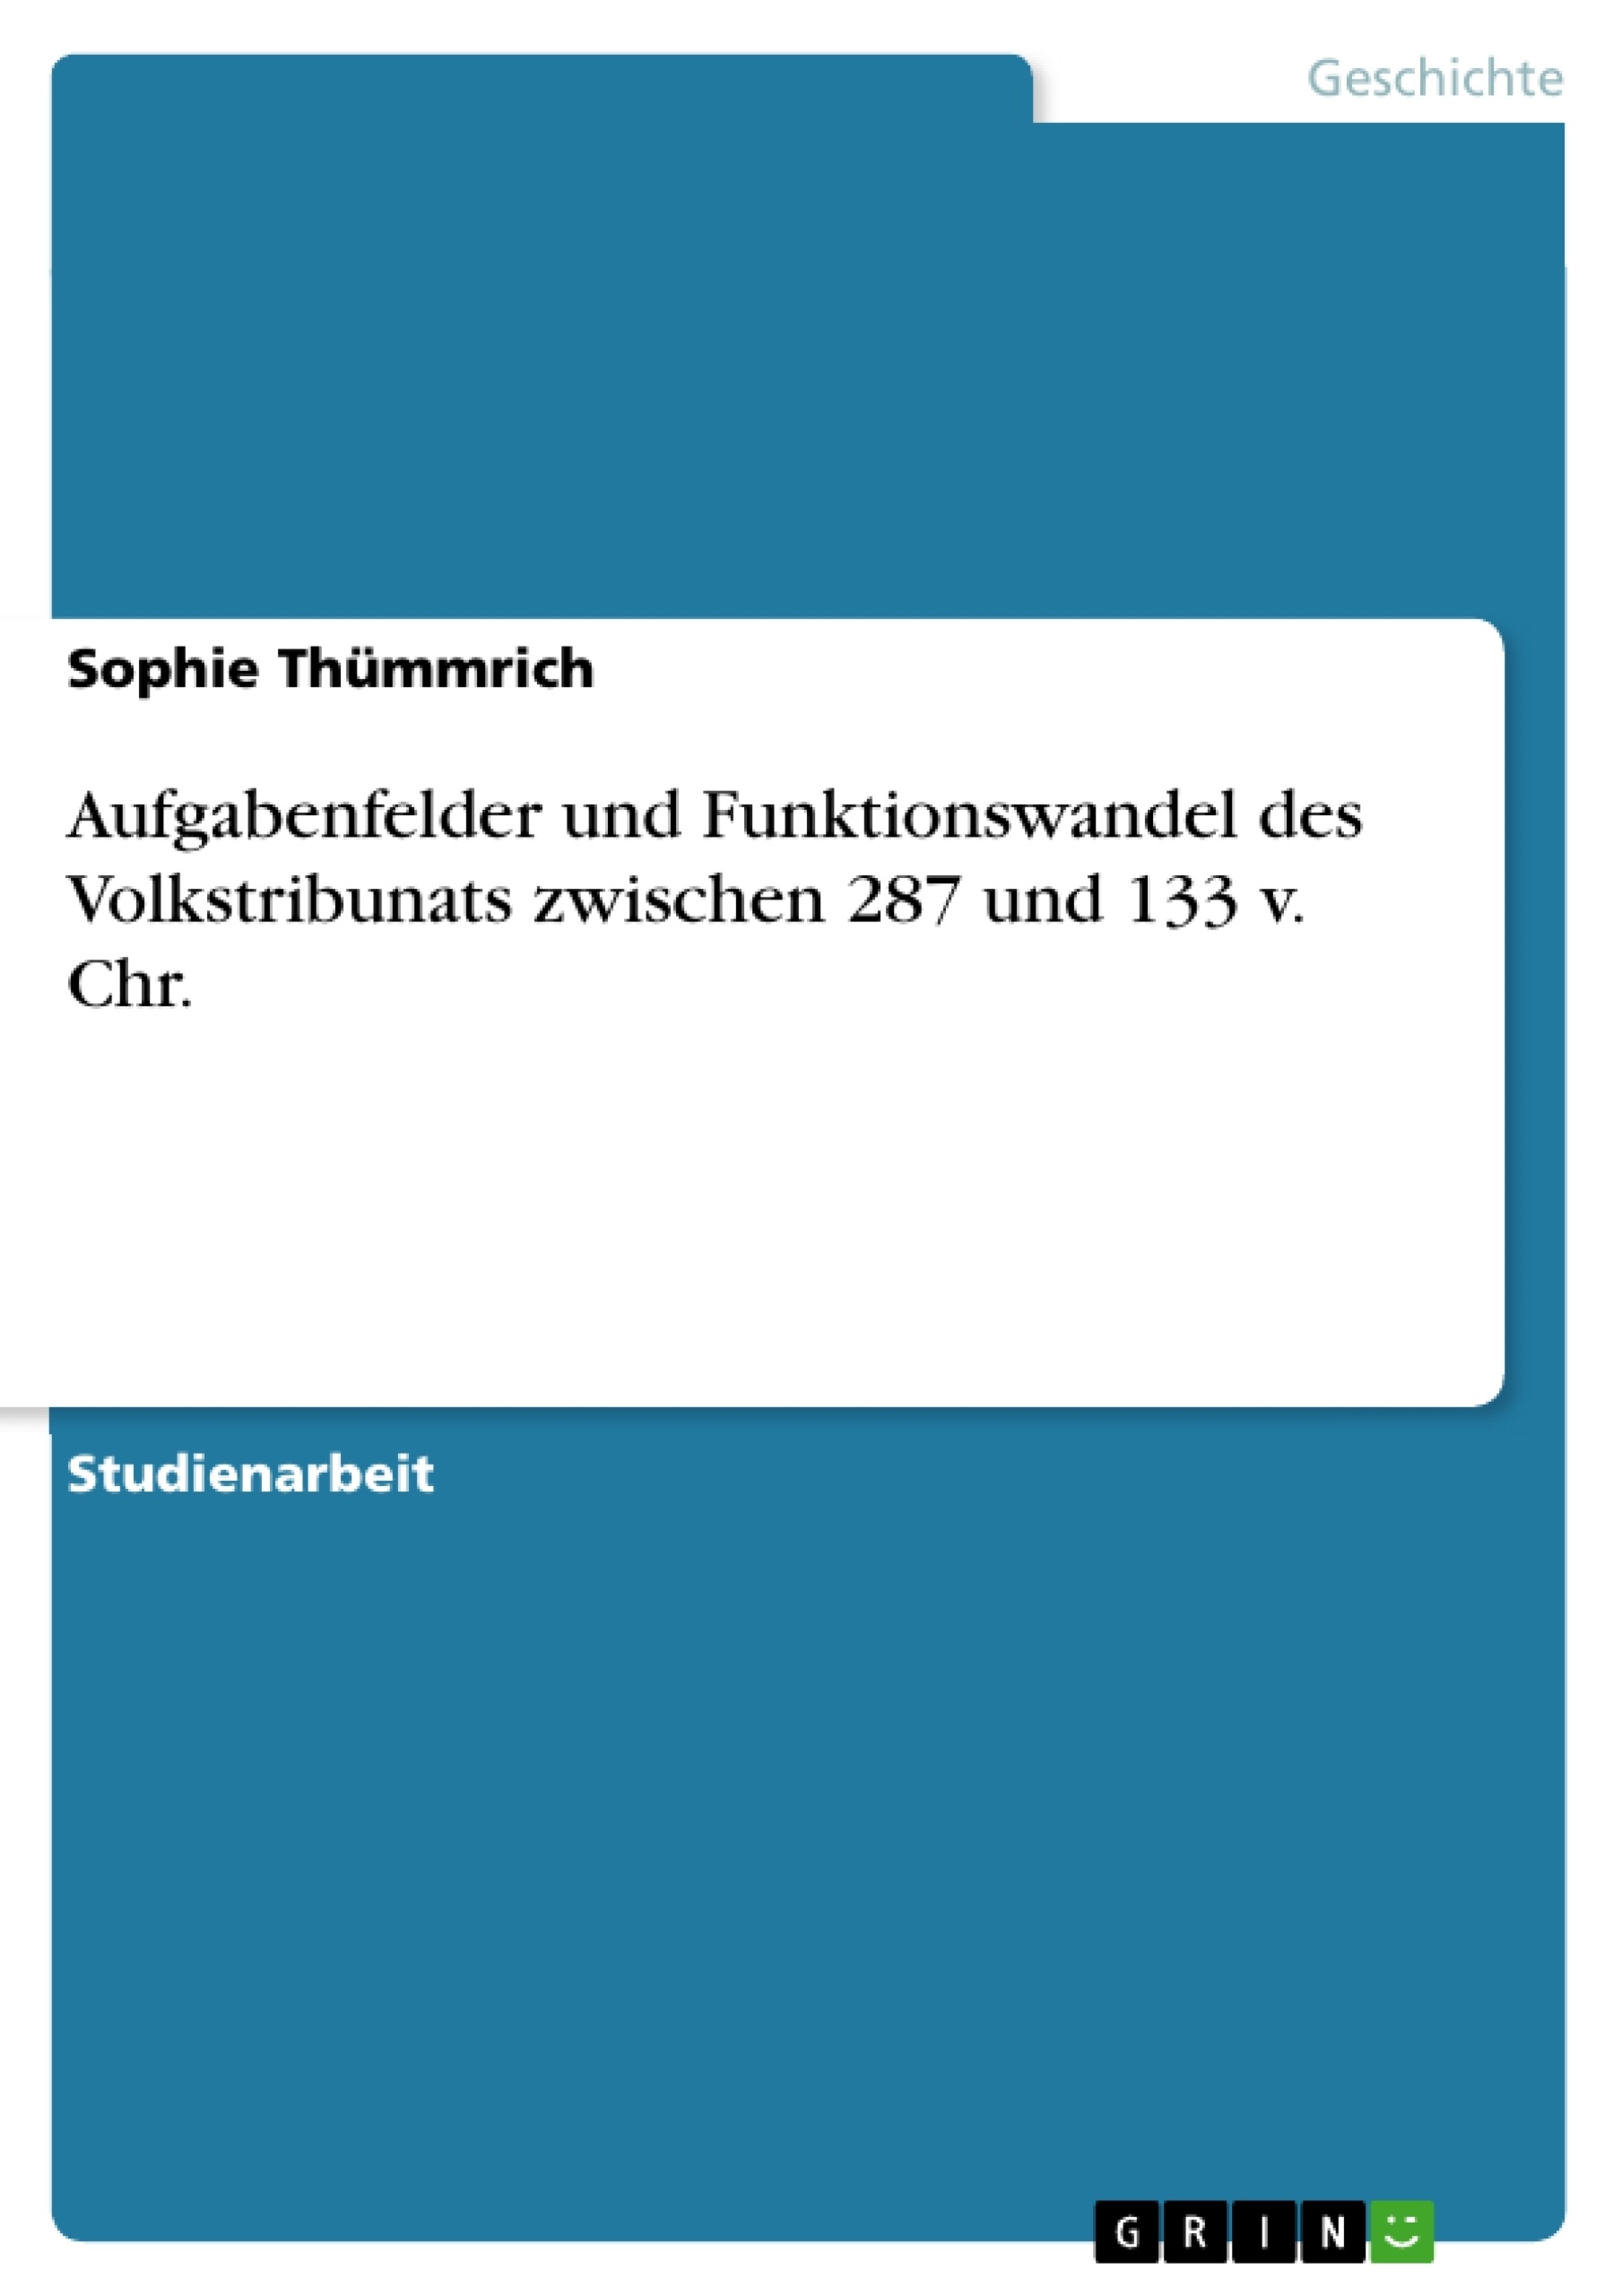 Titre: Aufgabenfelder und Funktionswandel des Volkstribunats zwischen 287 und 133 v. Chr.